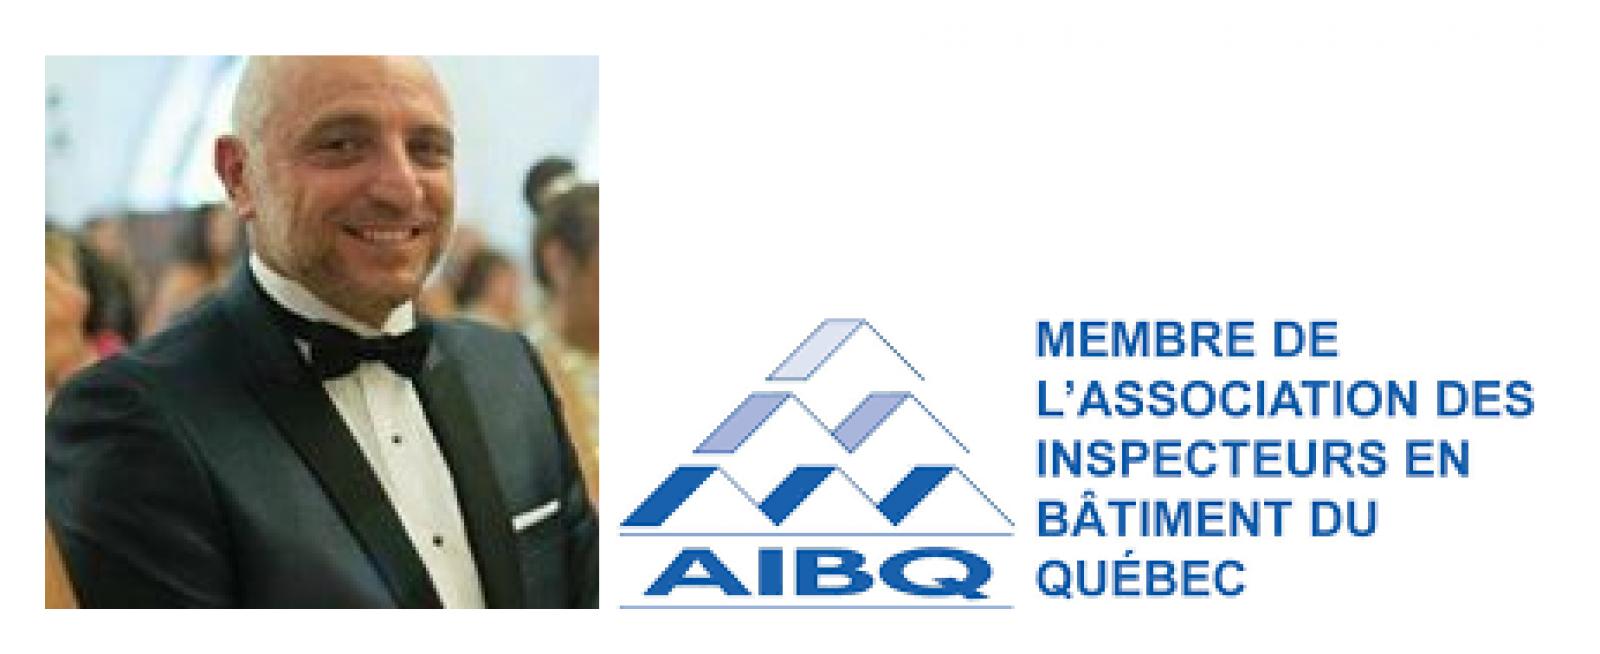 Georges Zaky Ajram inspecteurs en bâtiments du Québec (AIBQ) Logo